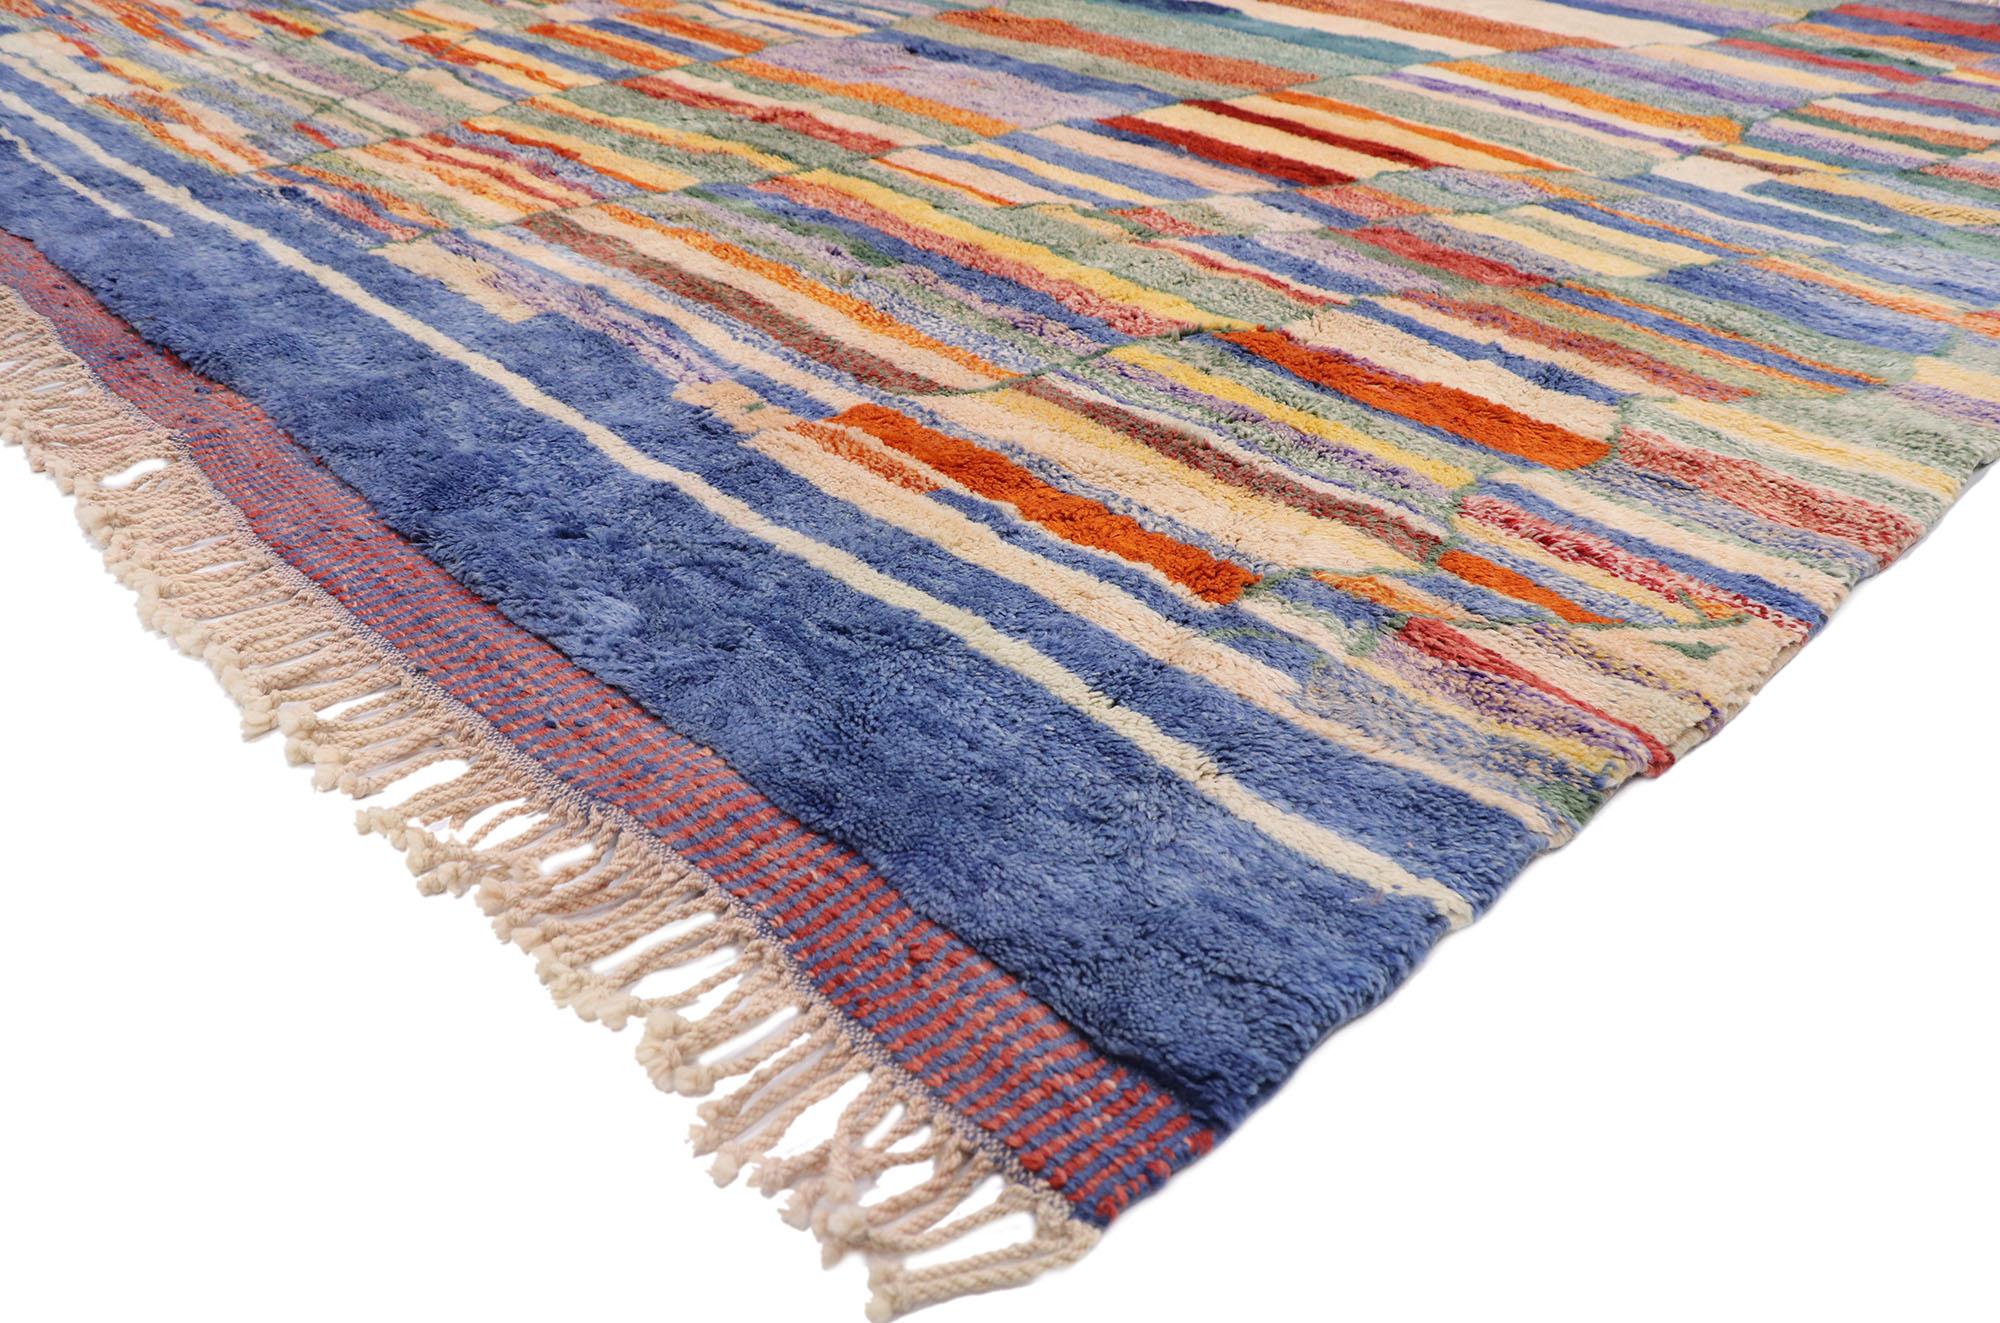 21165 Tapis marocain moderne Beni Mrirt, 10'04 x 12'11. Les tapis Beni Mrirt sont un type de tapis marocain traditionnel connu pour sa texture pelucheuse, ses motifs géométriques et sa palette de couleurs douces et naturelles. Ils sont tissés à la